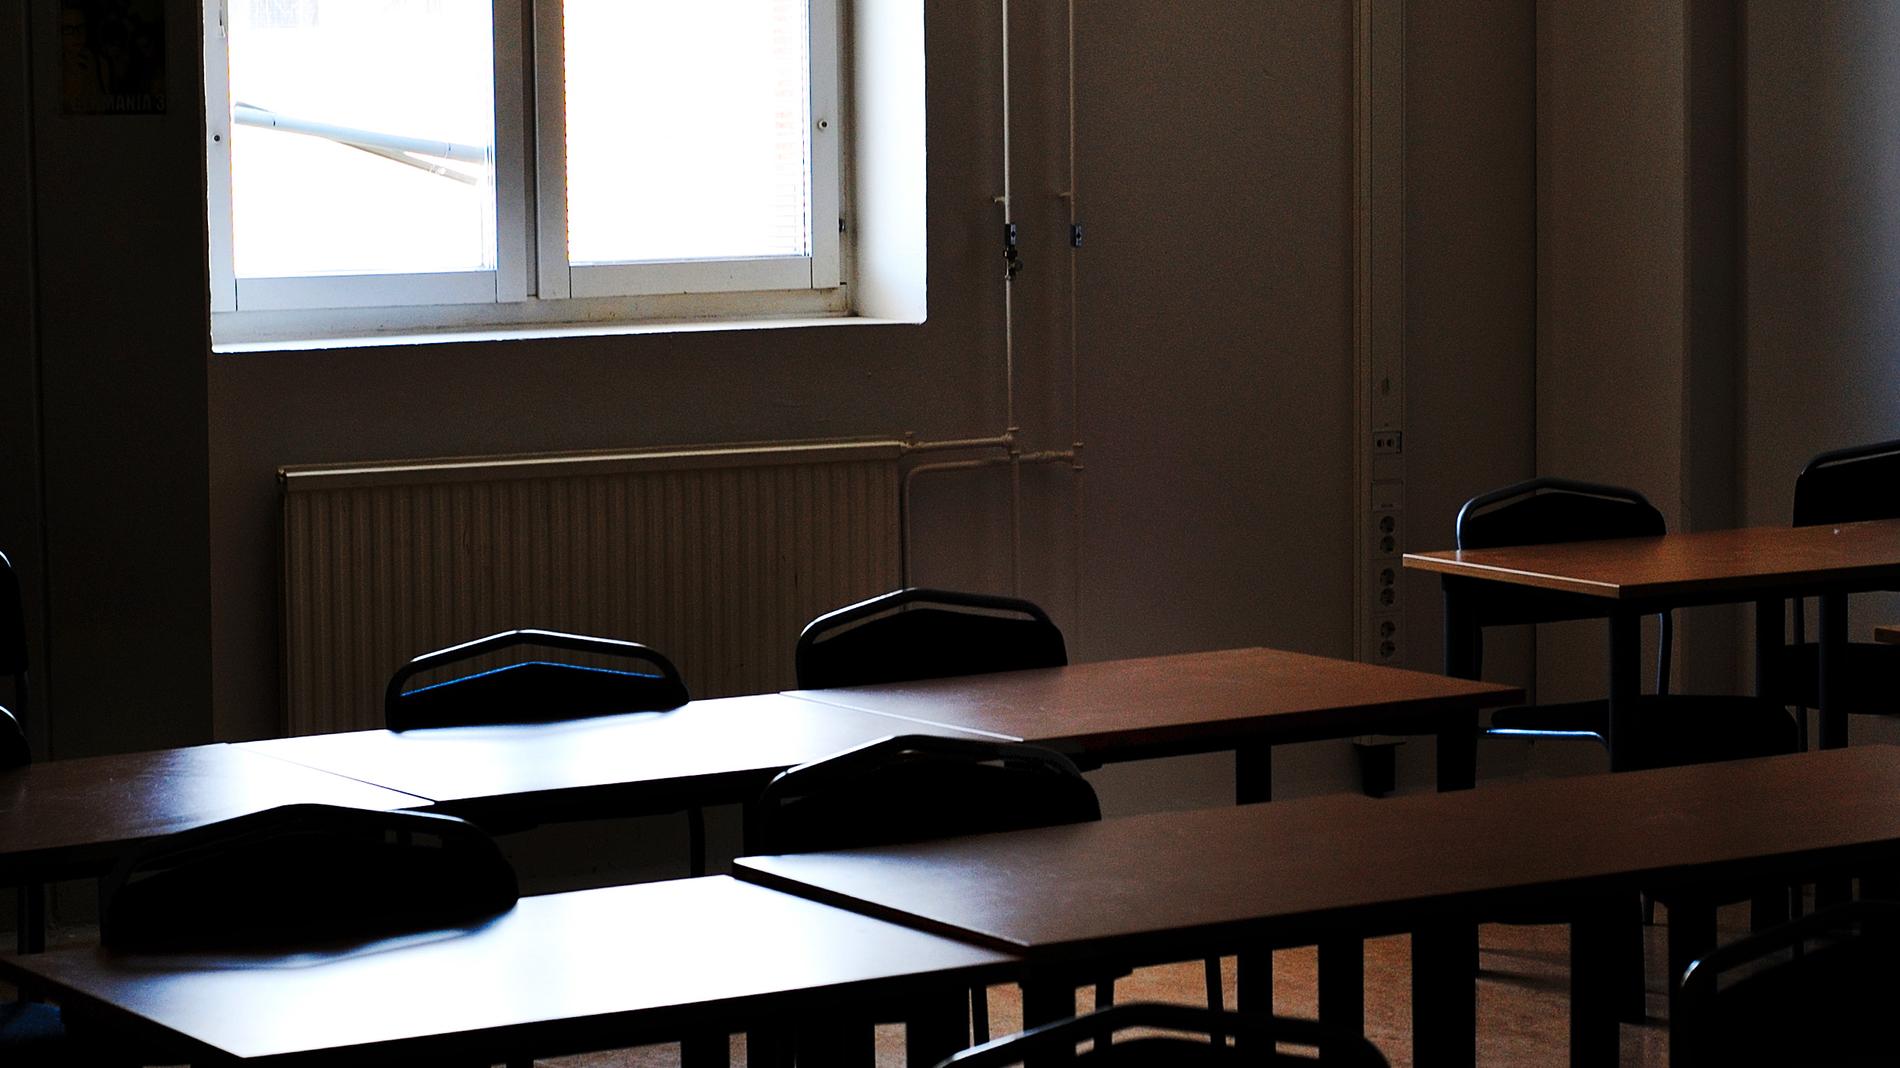 Elever stängs av i en skola i Hallsberg efter ett stort bråk. Arkivbild.